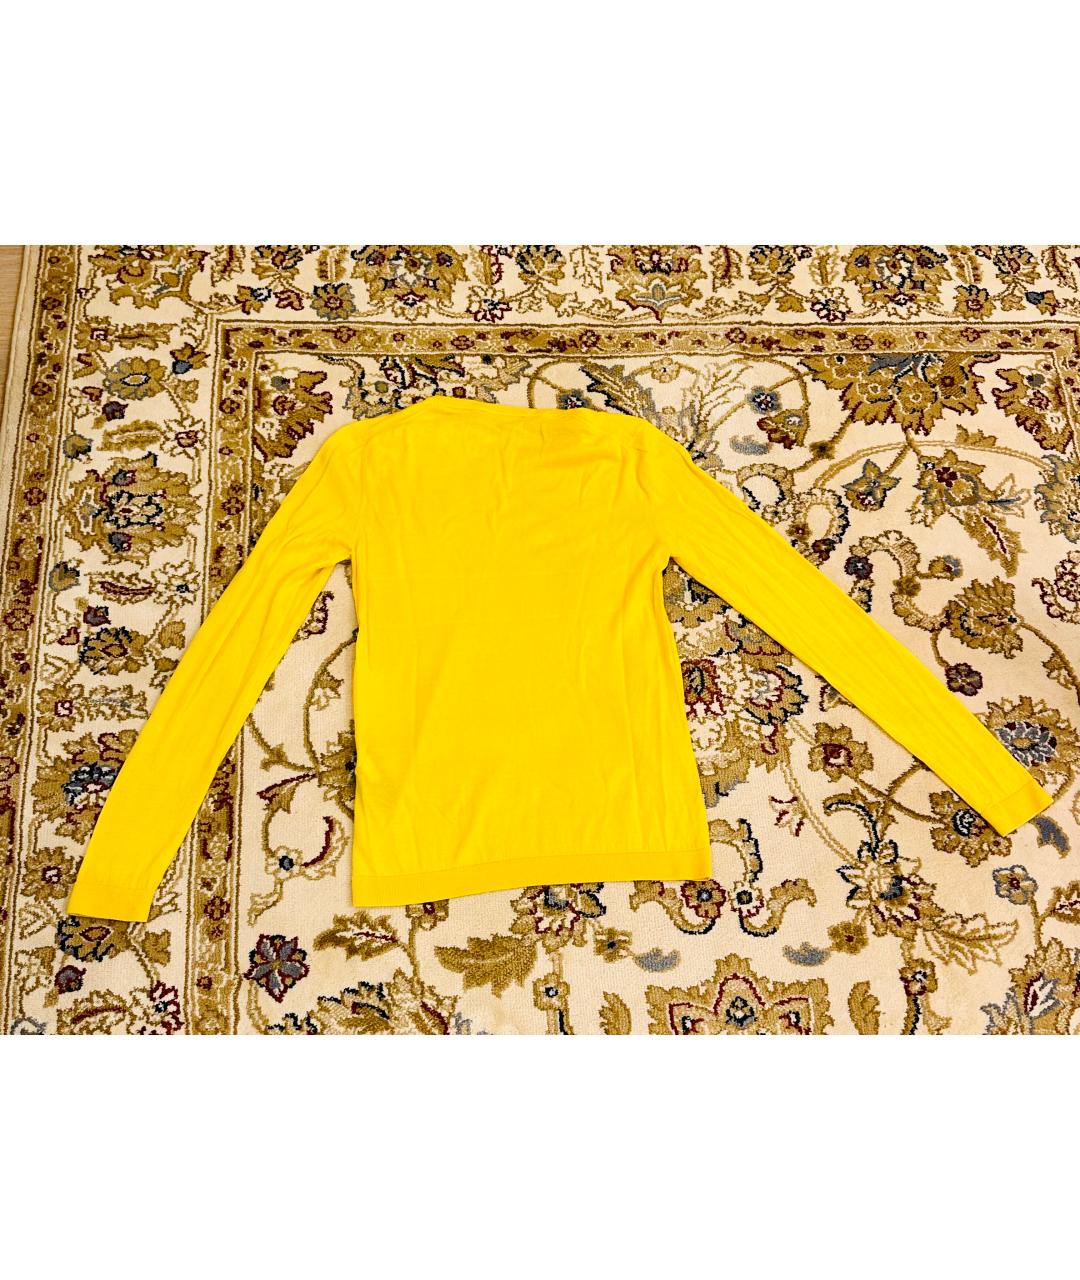 RALPH LAUREN Желтый кашемировый джемпер / свитер, фото 2